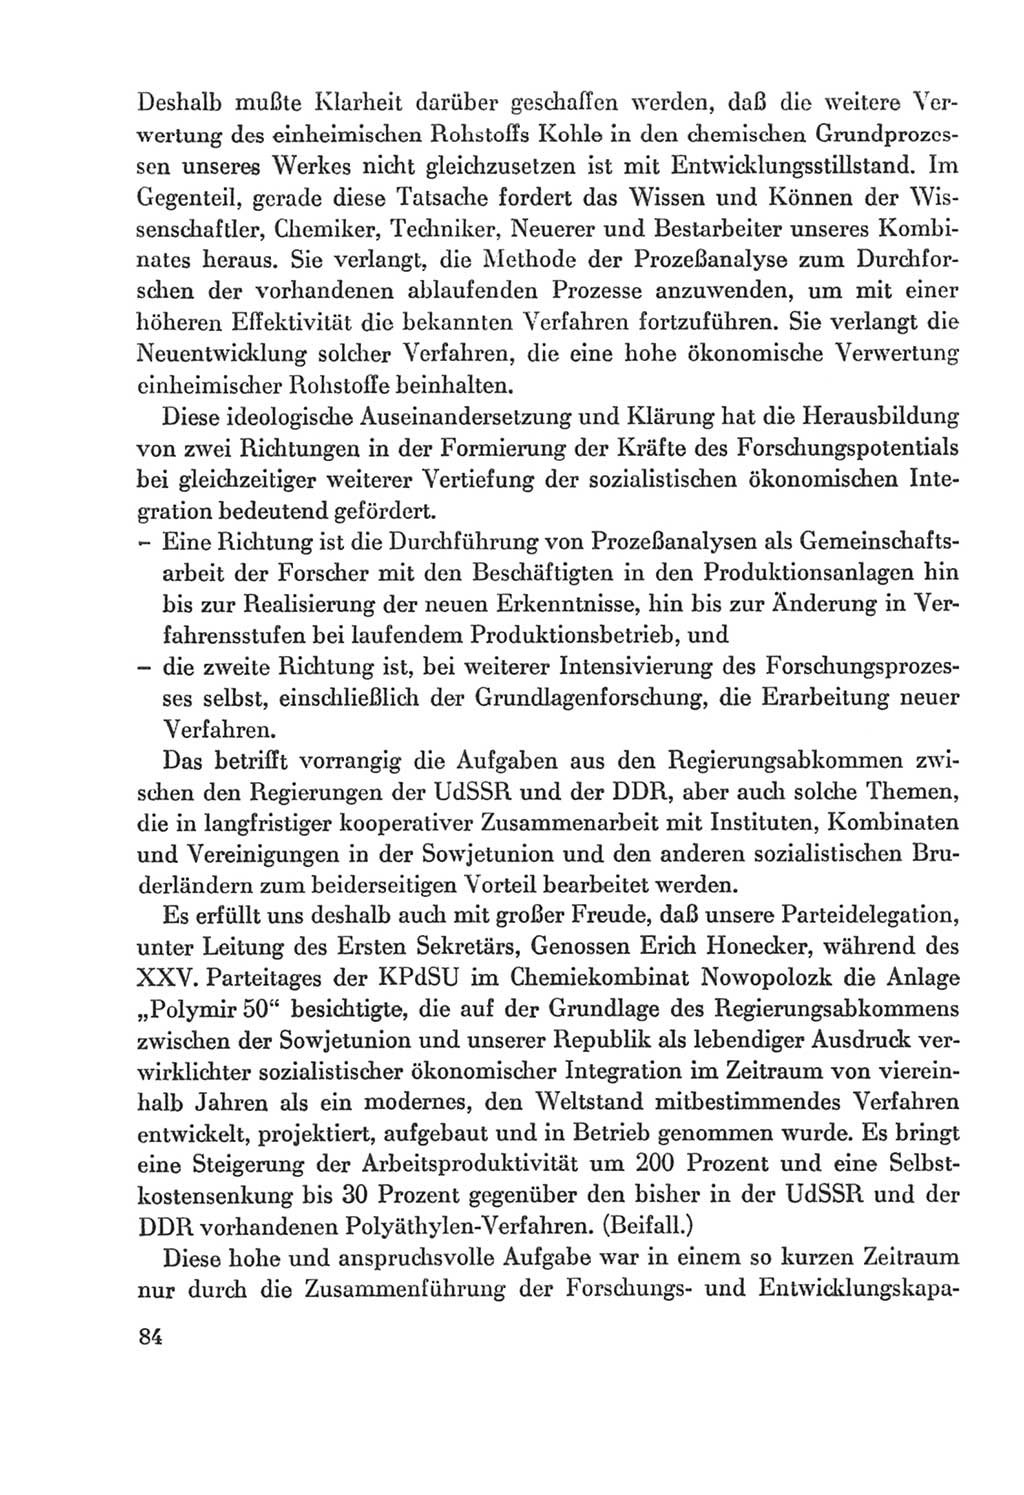 Protokoll der Verhandlungen des Ⅸ. Parteitages der Sozialistischen Einheitspartei Deutschlands (SED) [Deutsche Demokratische Republik (DDR)] 1976, Band 2, Seite 84 (Prot. Verh. Ⅸ. PT SED DDR 1976, Bd. 2, S. 84)